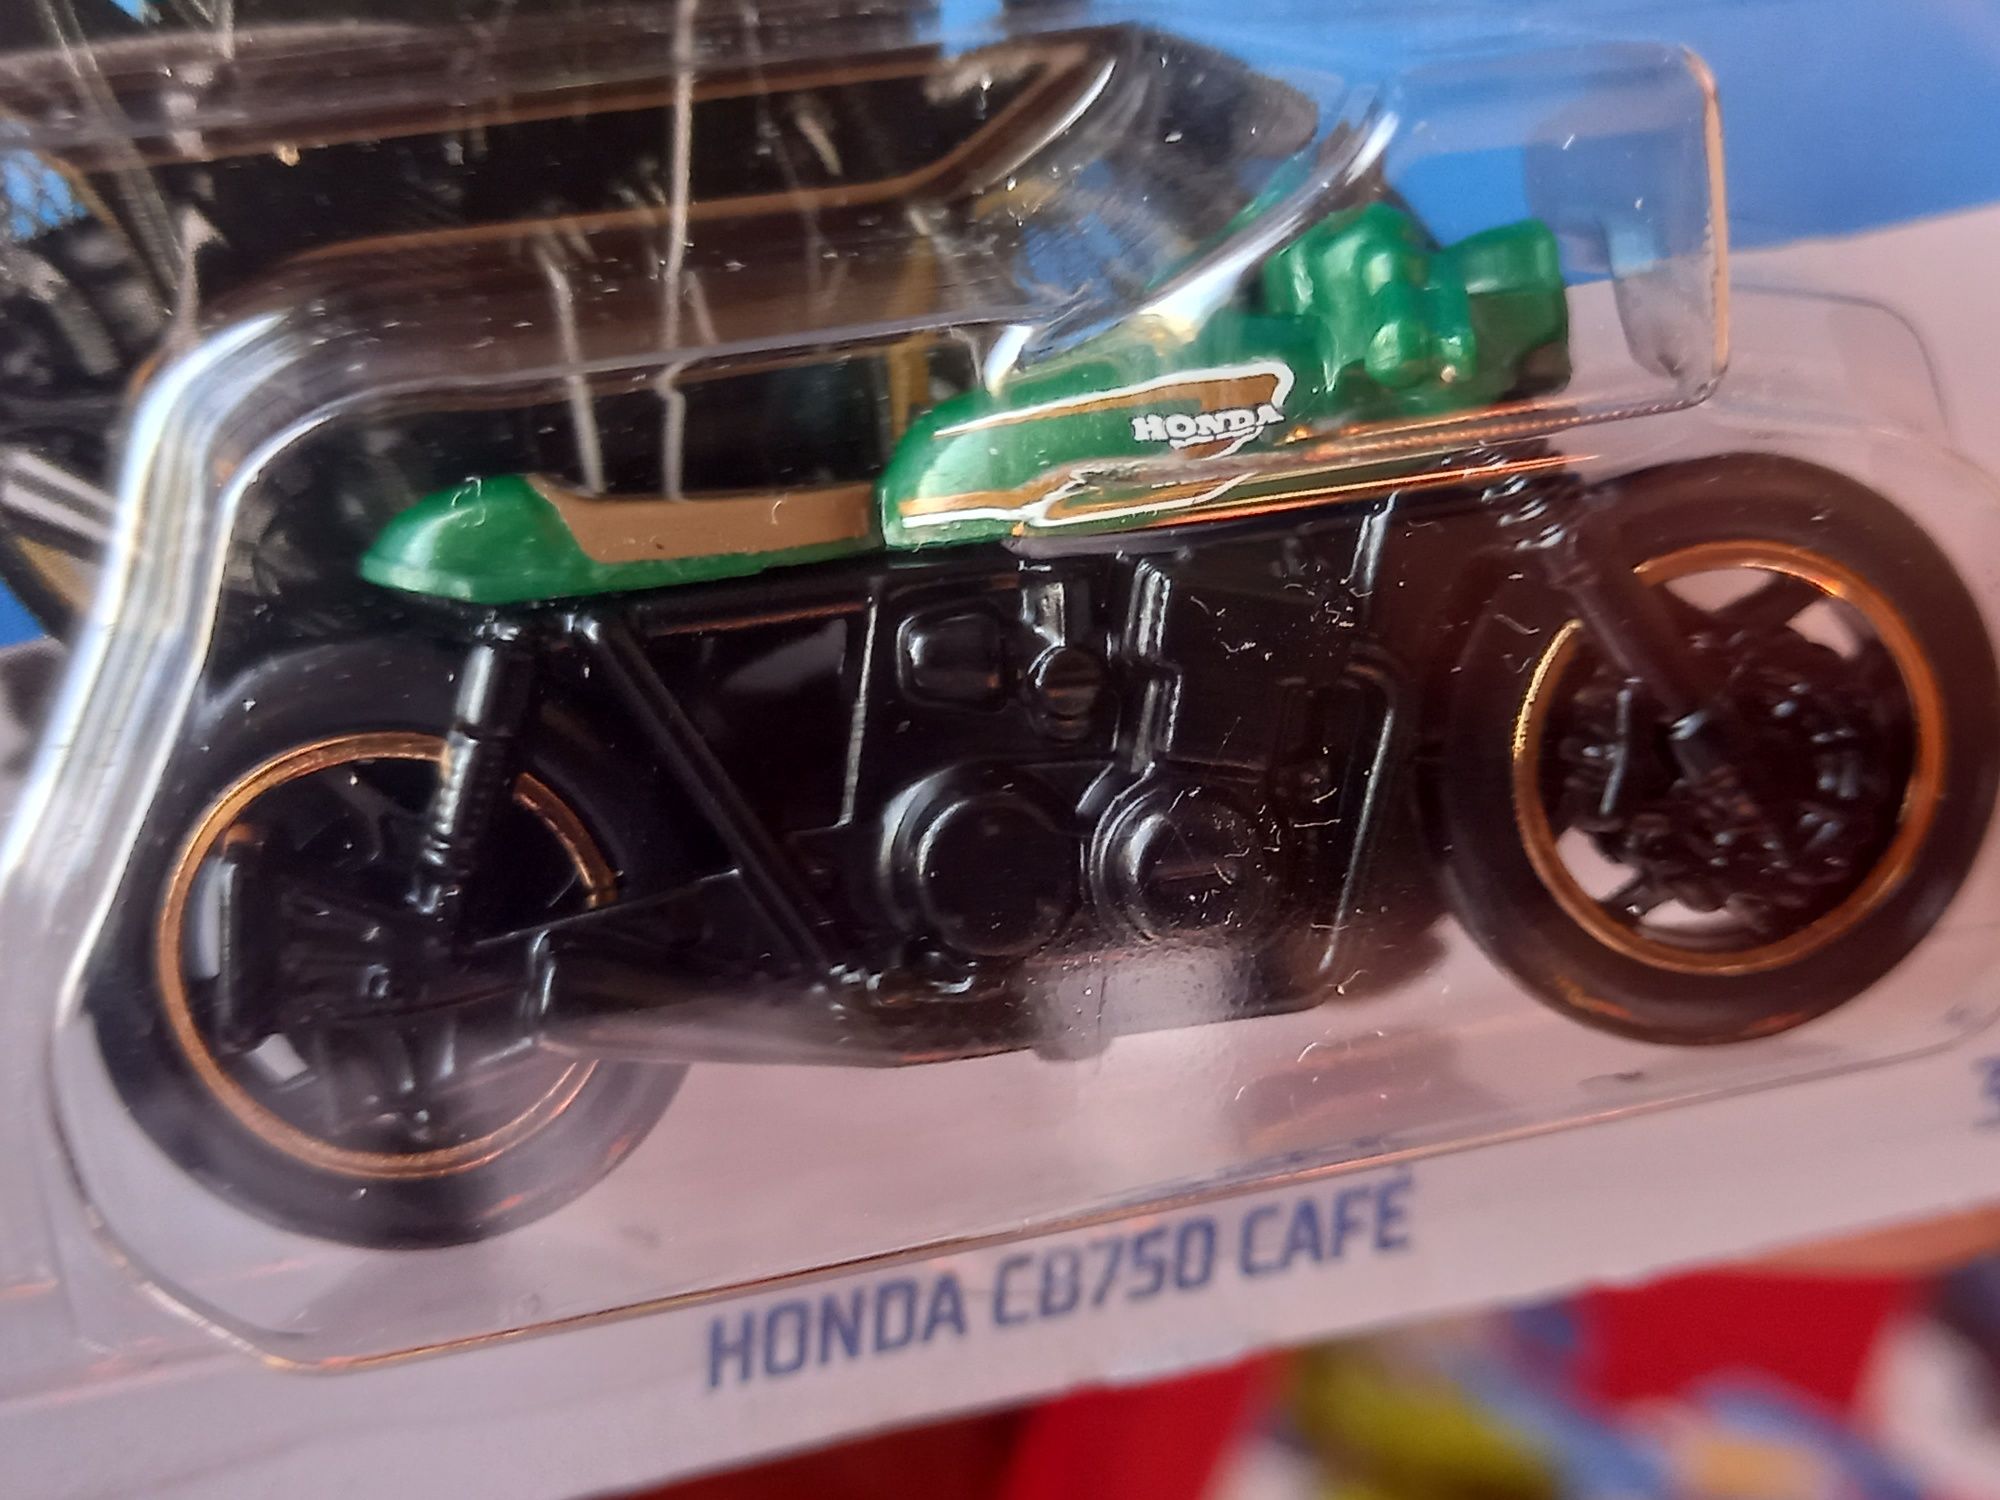 Honda cb750 café